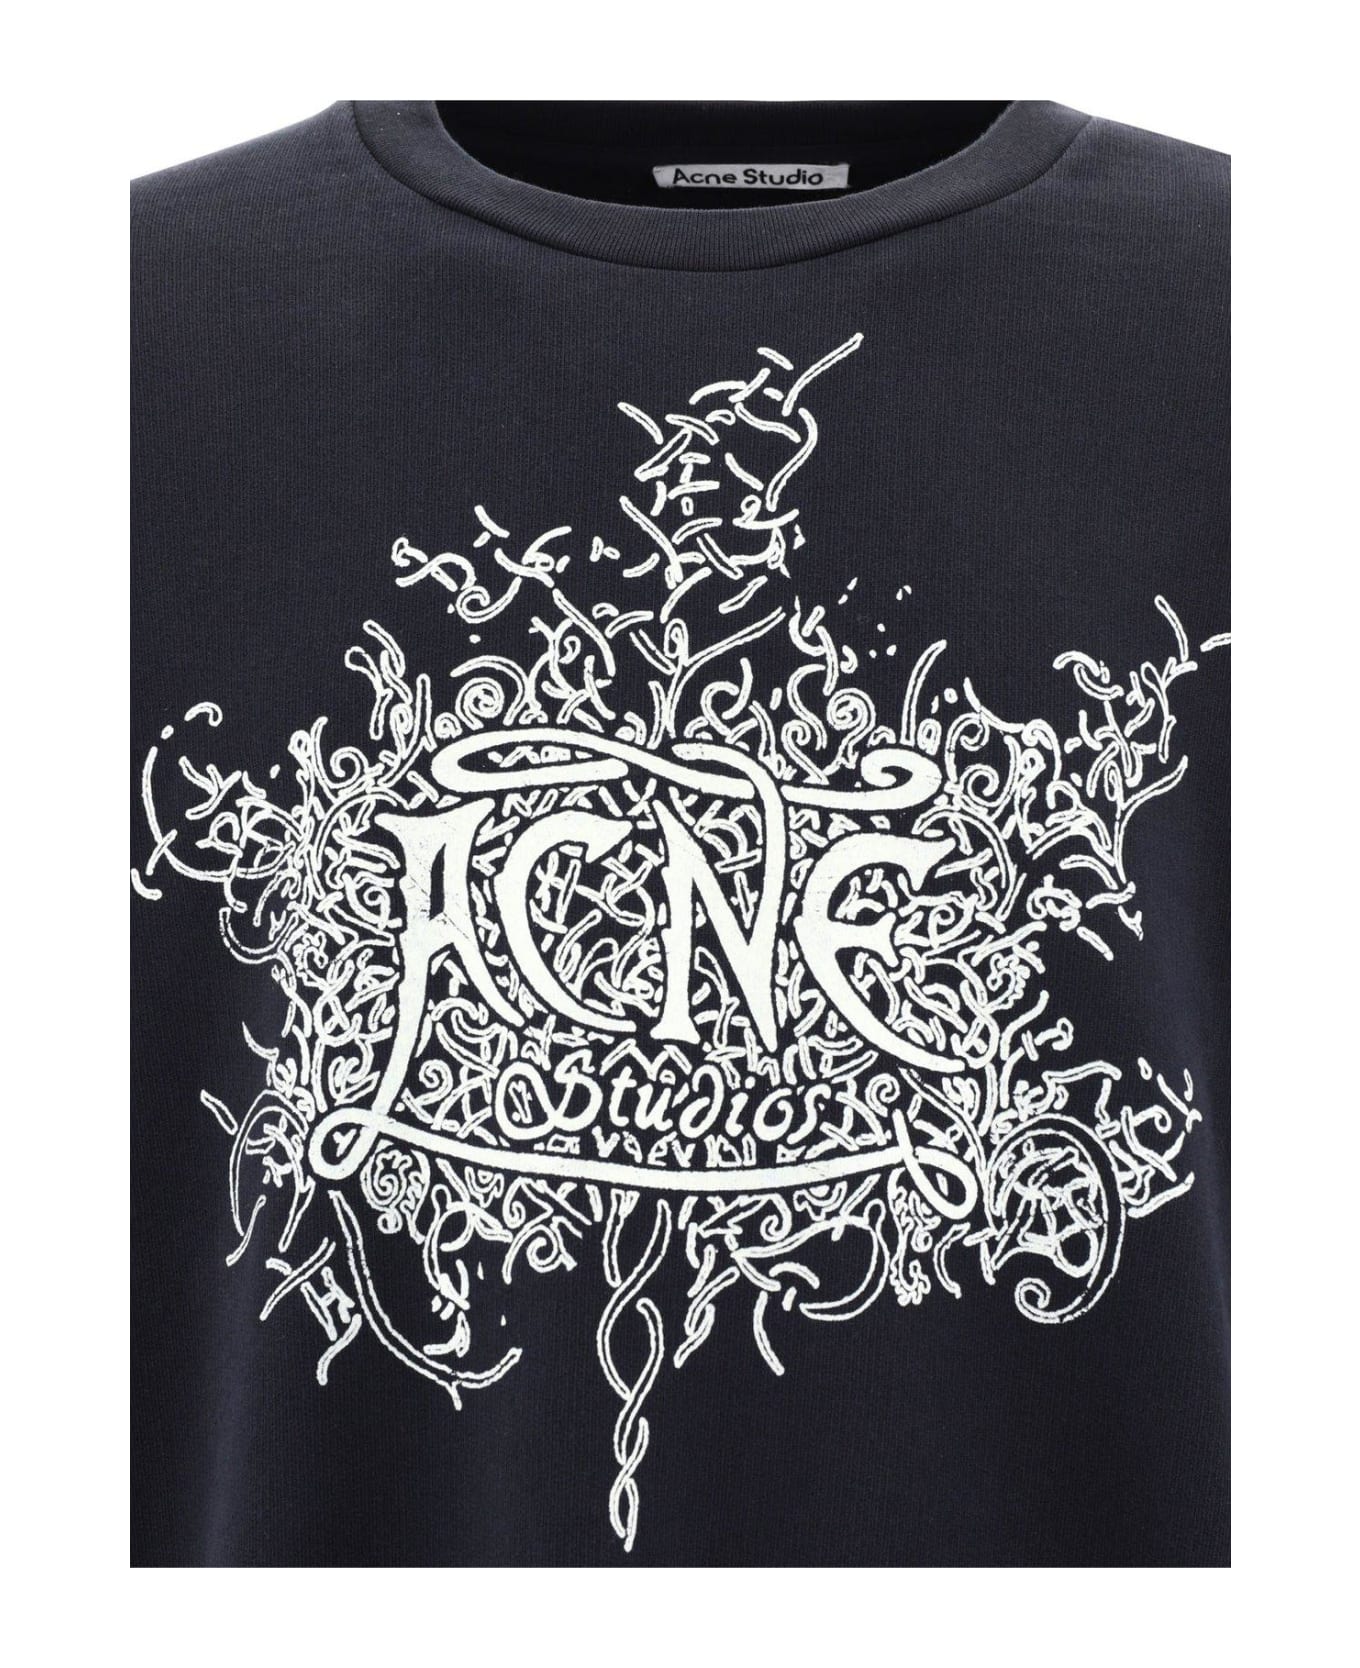 Acne Studios Logo Printed Crewneck Sweatshirt - Black